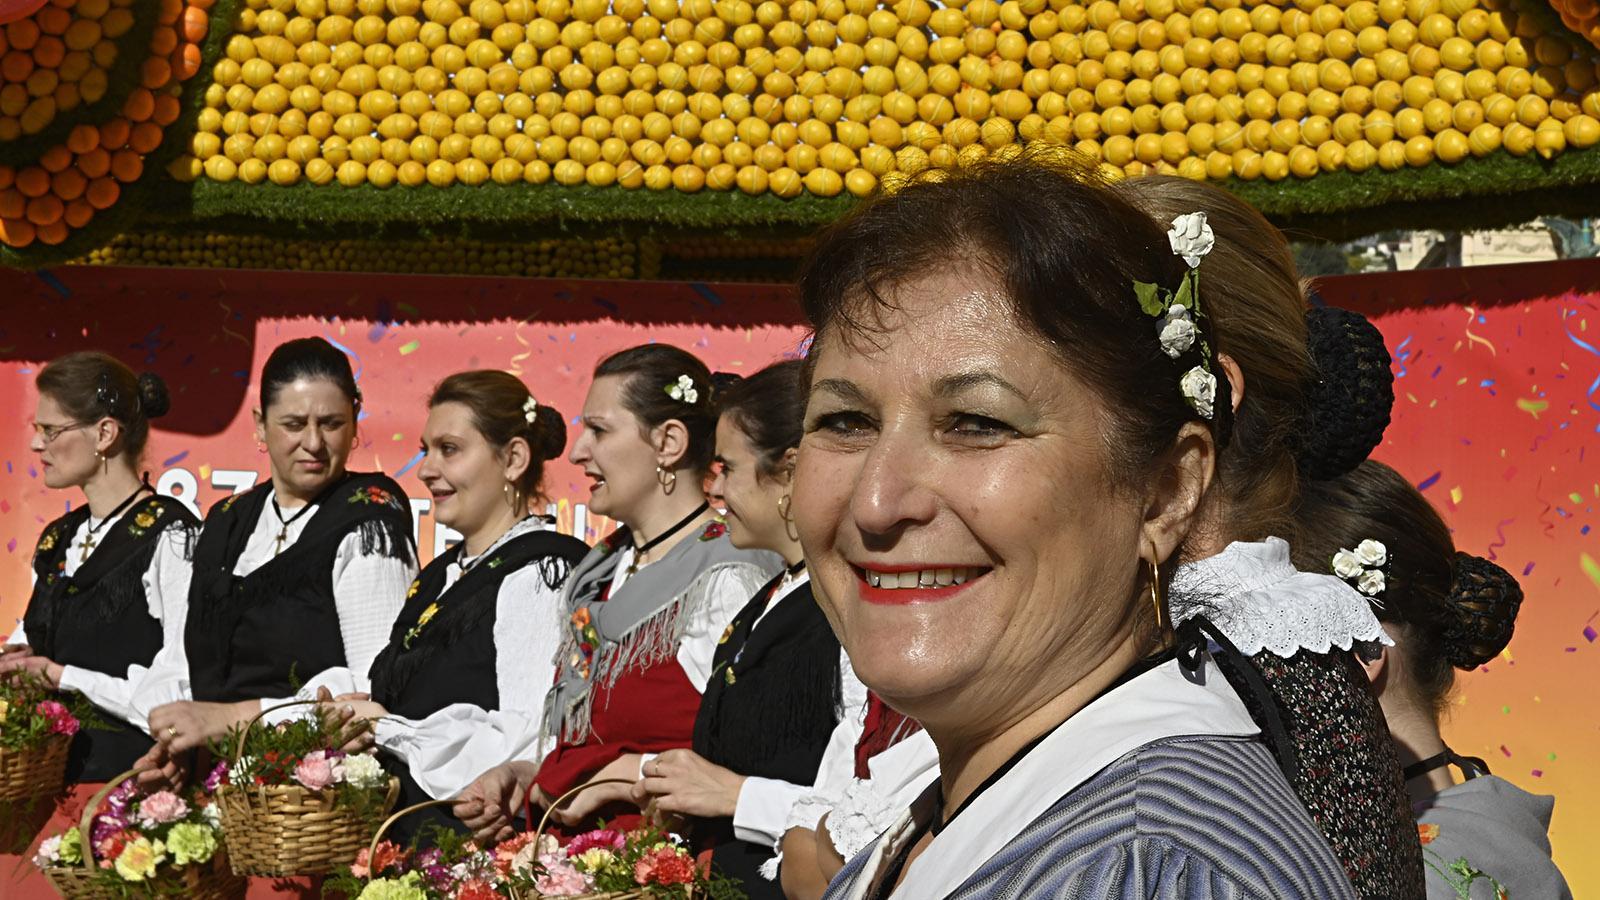 Fête du Citron: Trachtentänzerinnen. Foto: Hilke Maunder